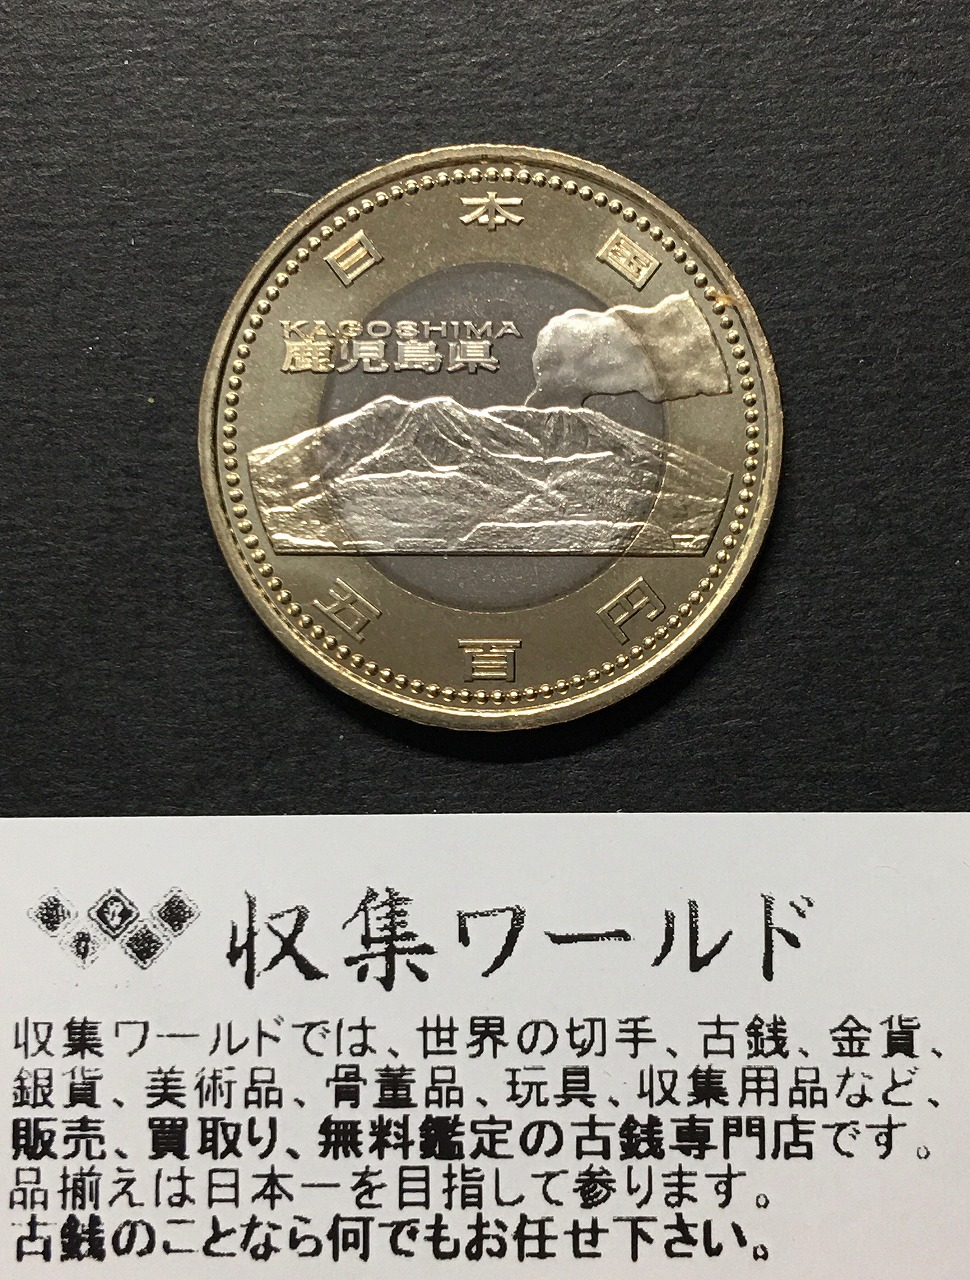 地方自治法施行60周年記念貨幣 5百円バイカラー クラッド貨幣 切手帳 